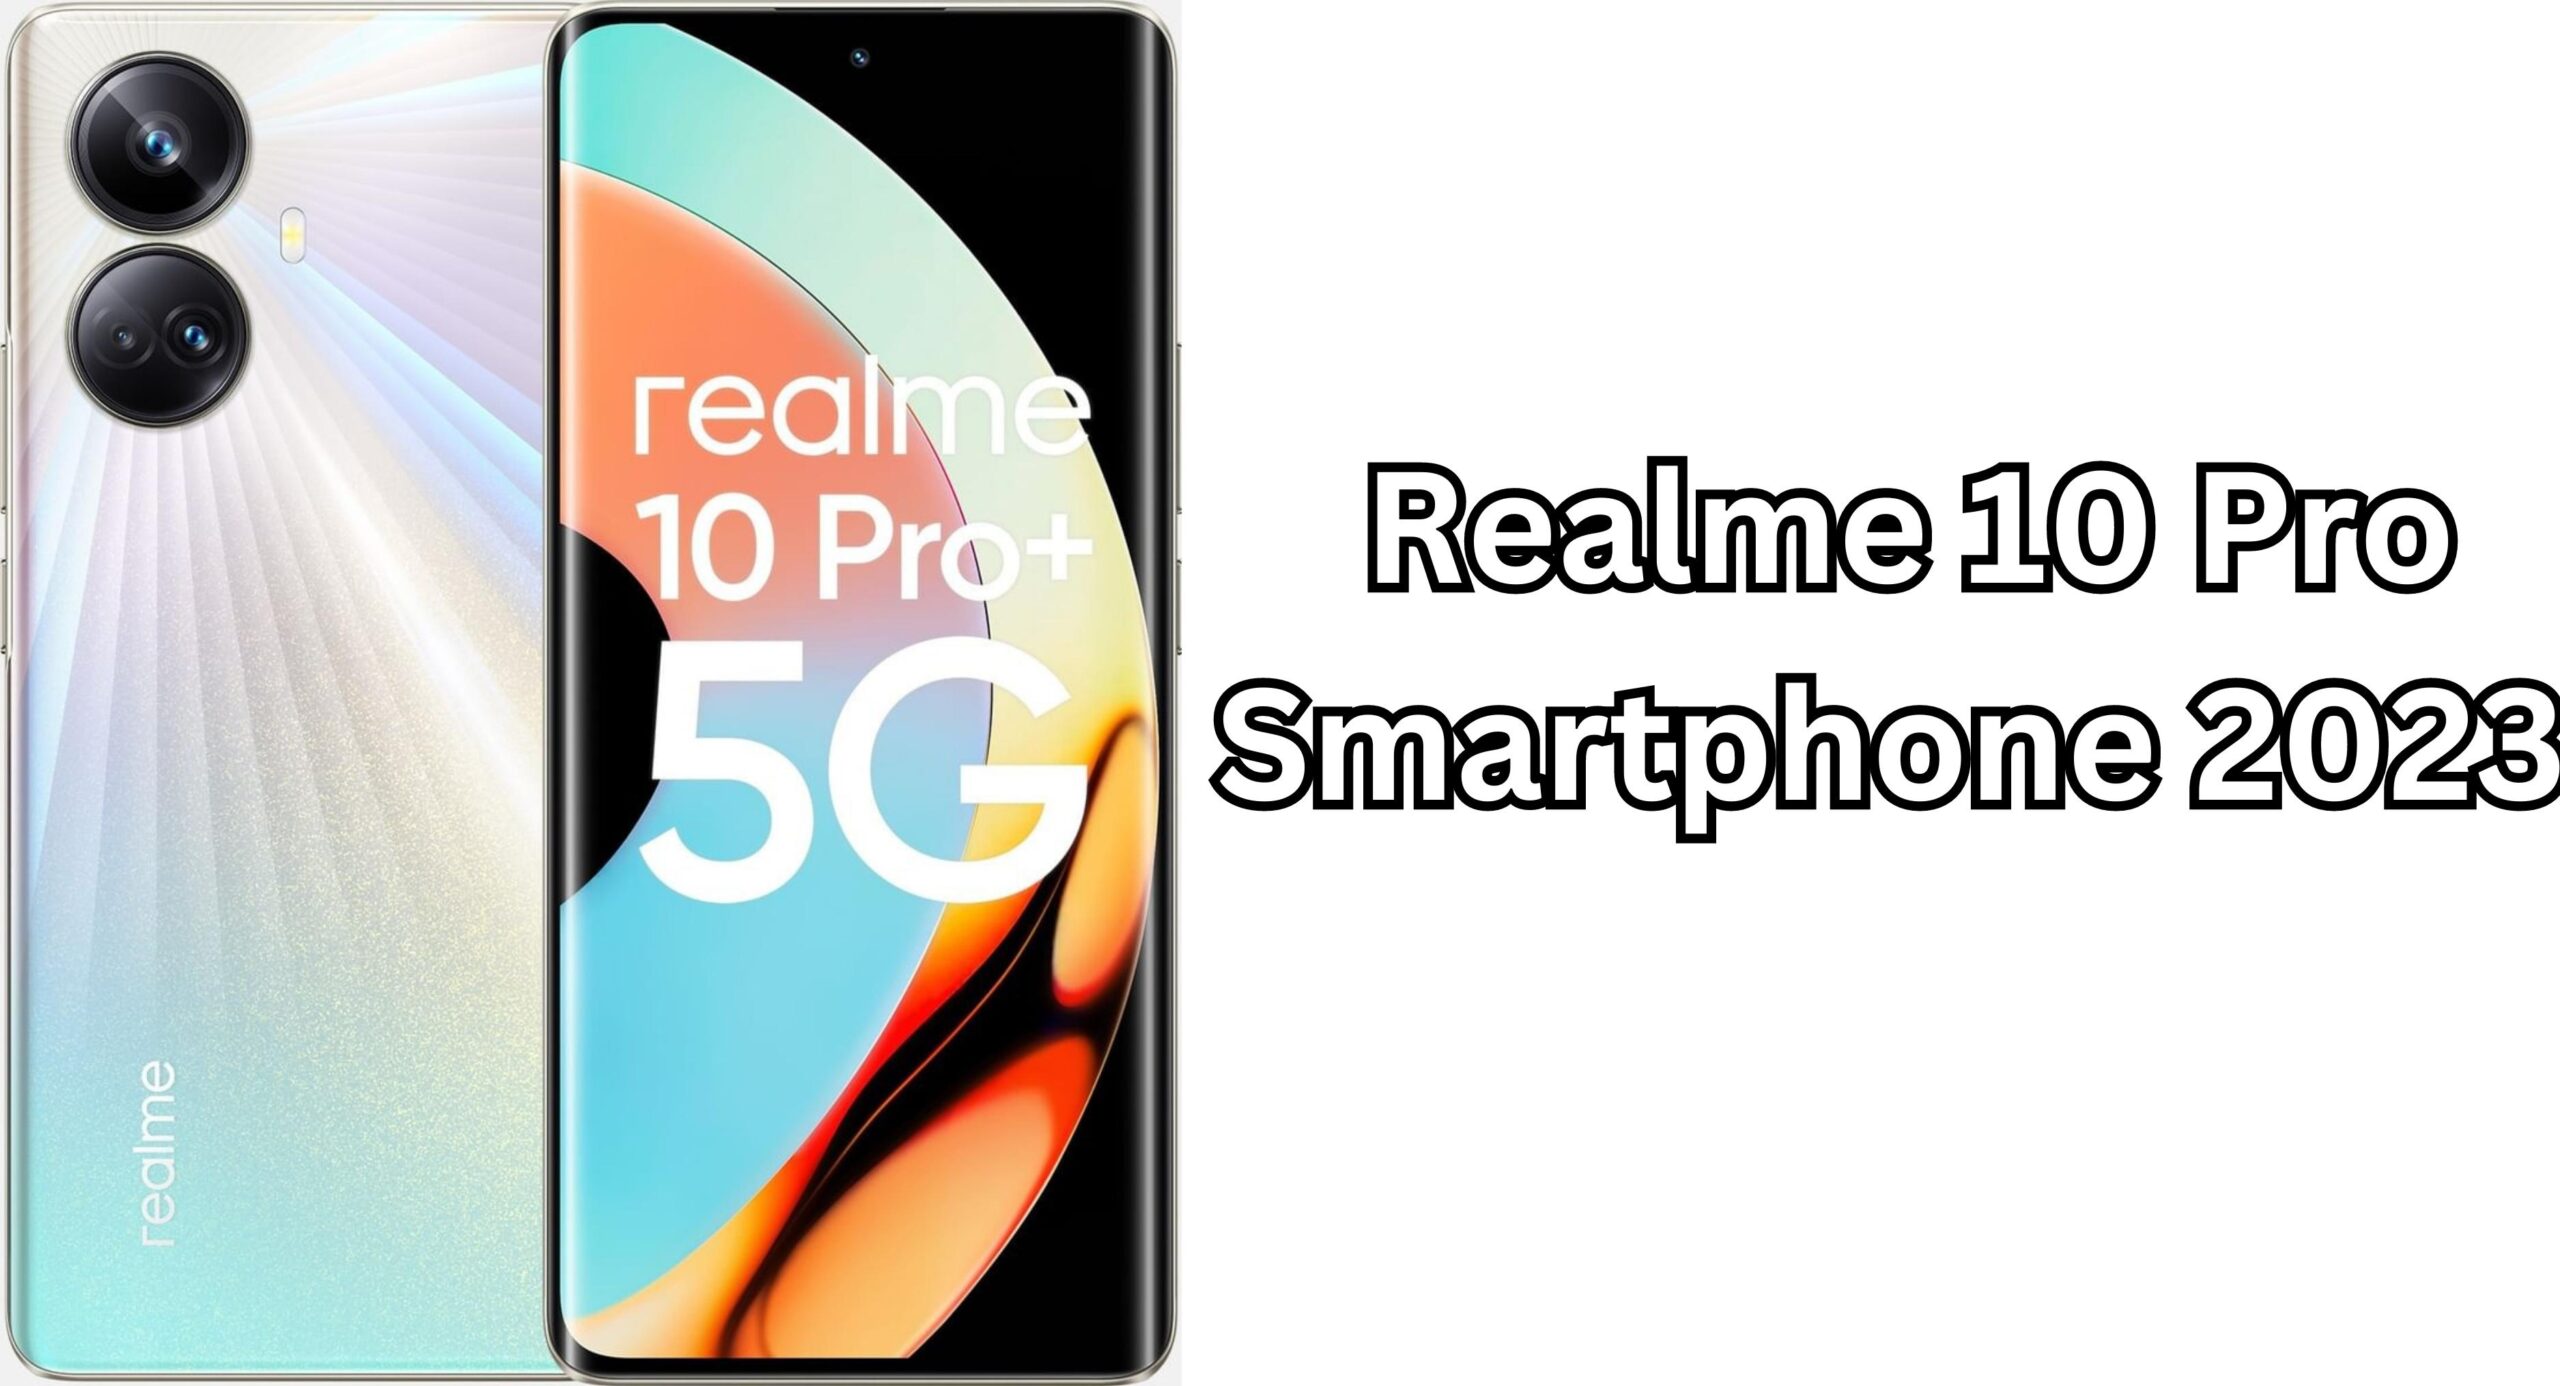 Realme 10 Pro Smartphone 2023